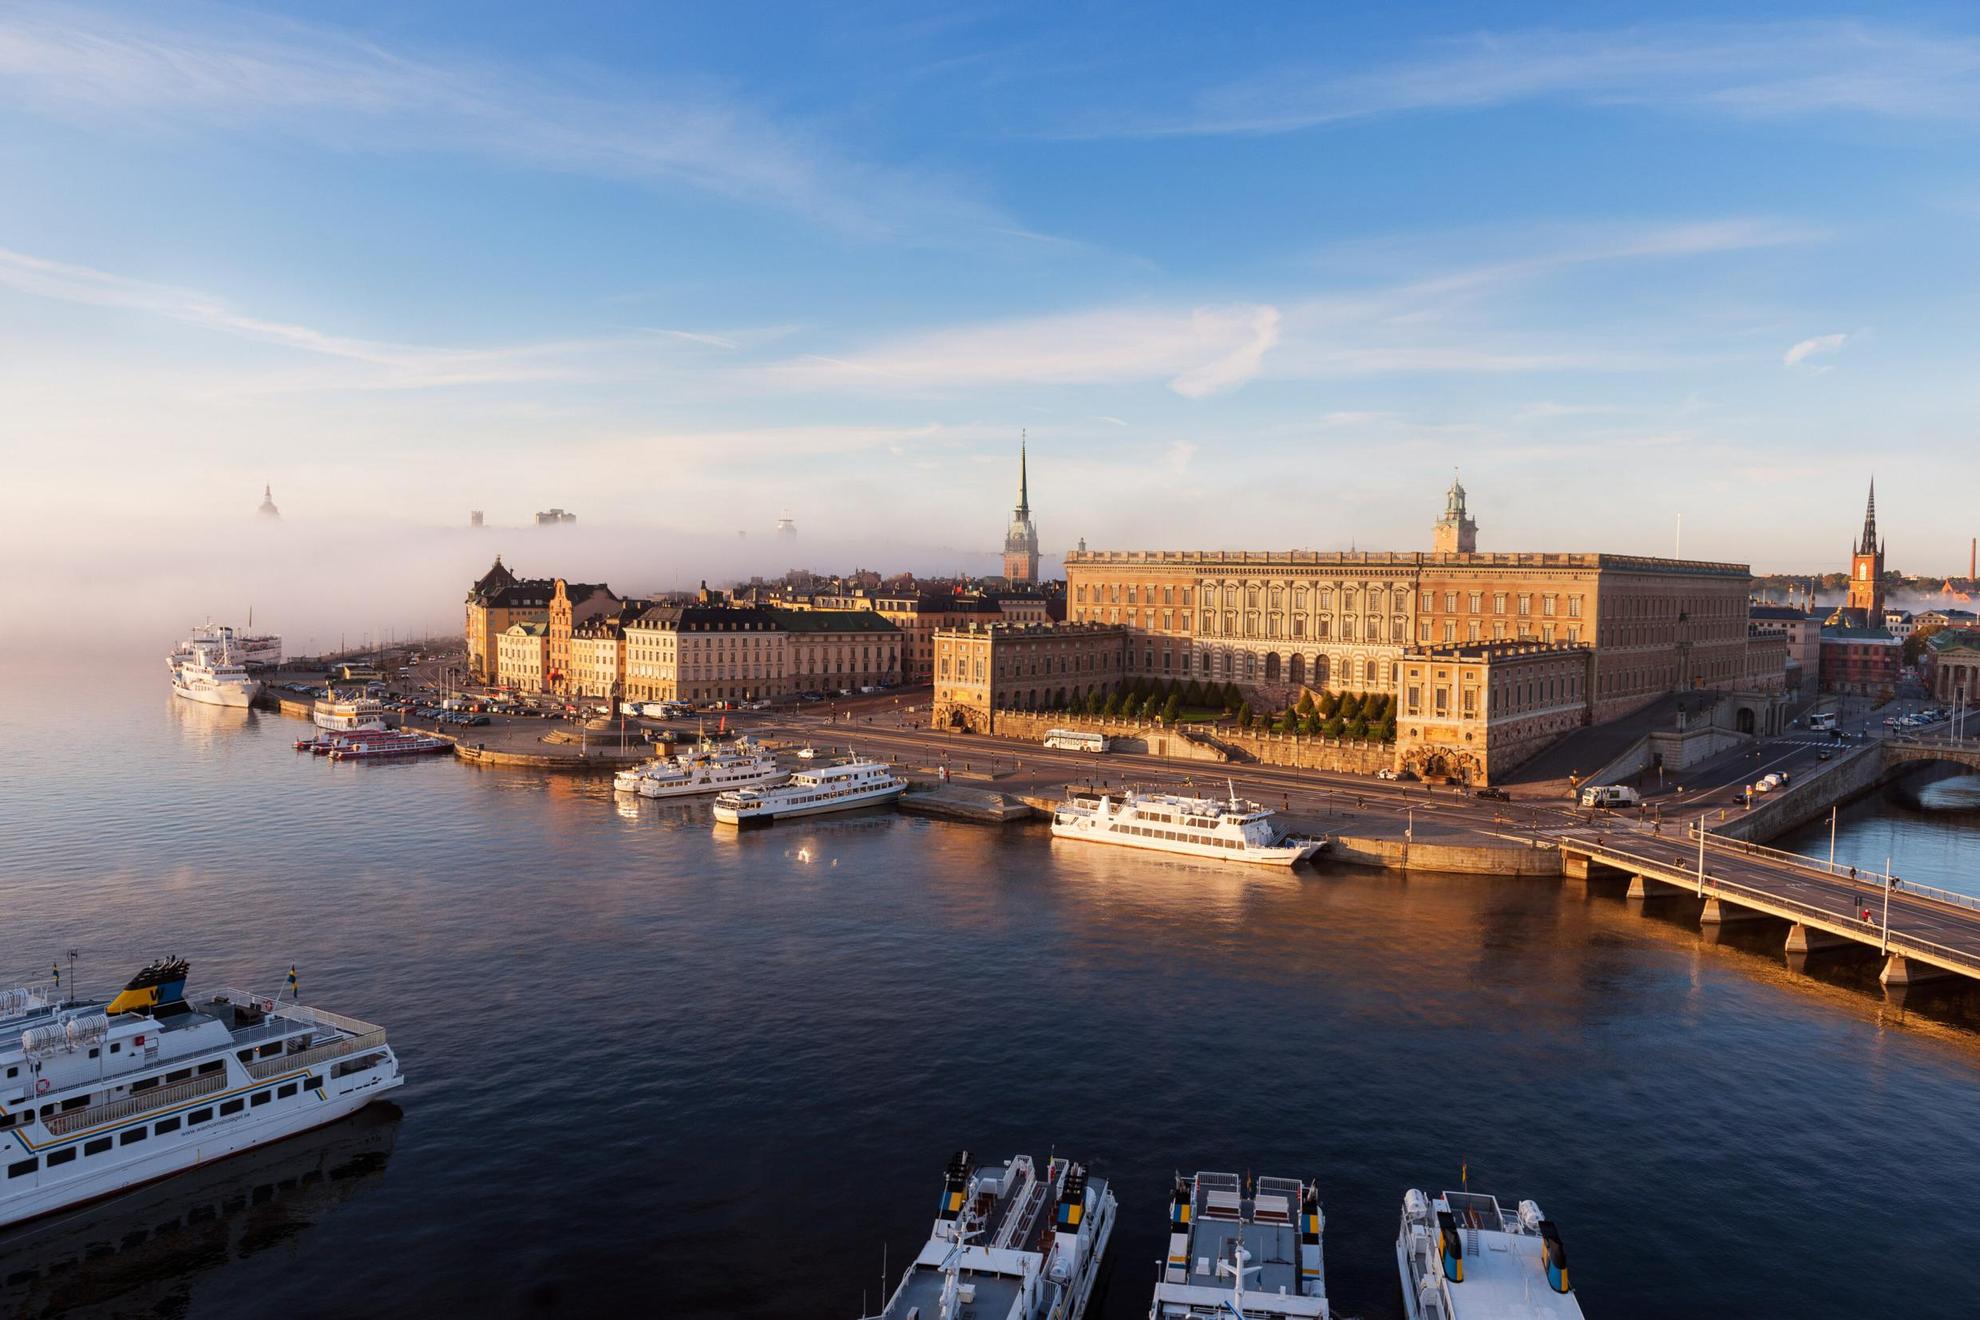 Vue sur le Palais royal de Stockholm par une belle journee de printemps ensoleillée.